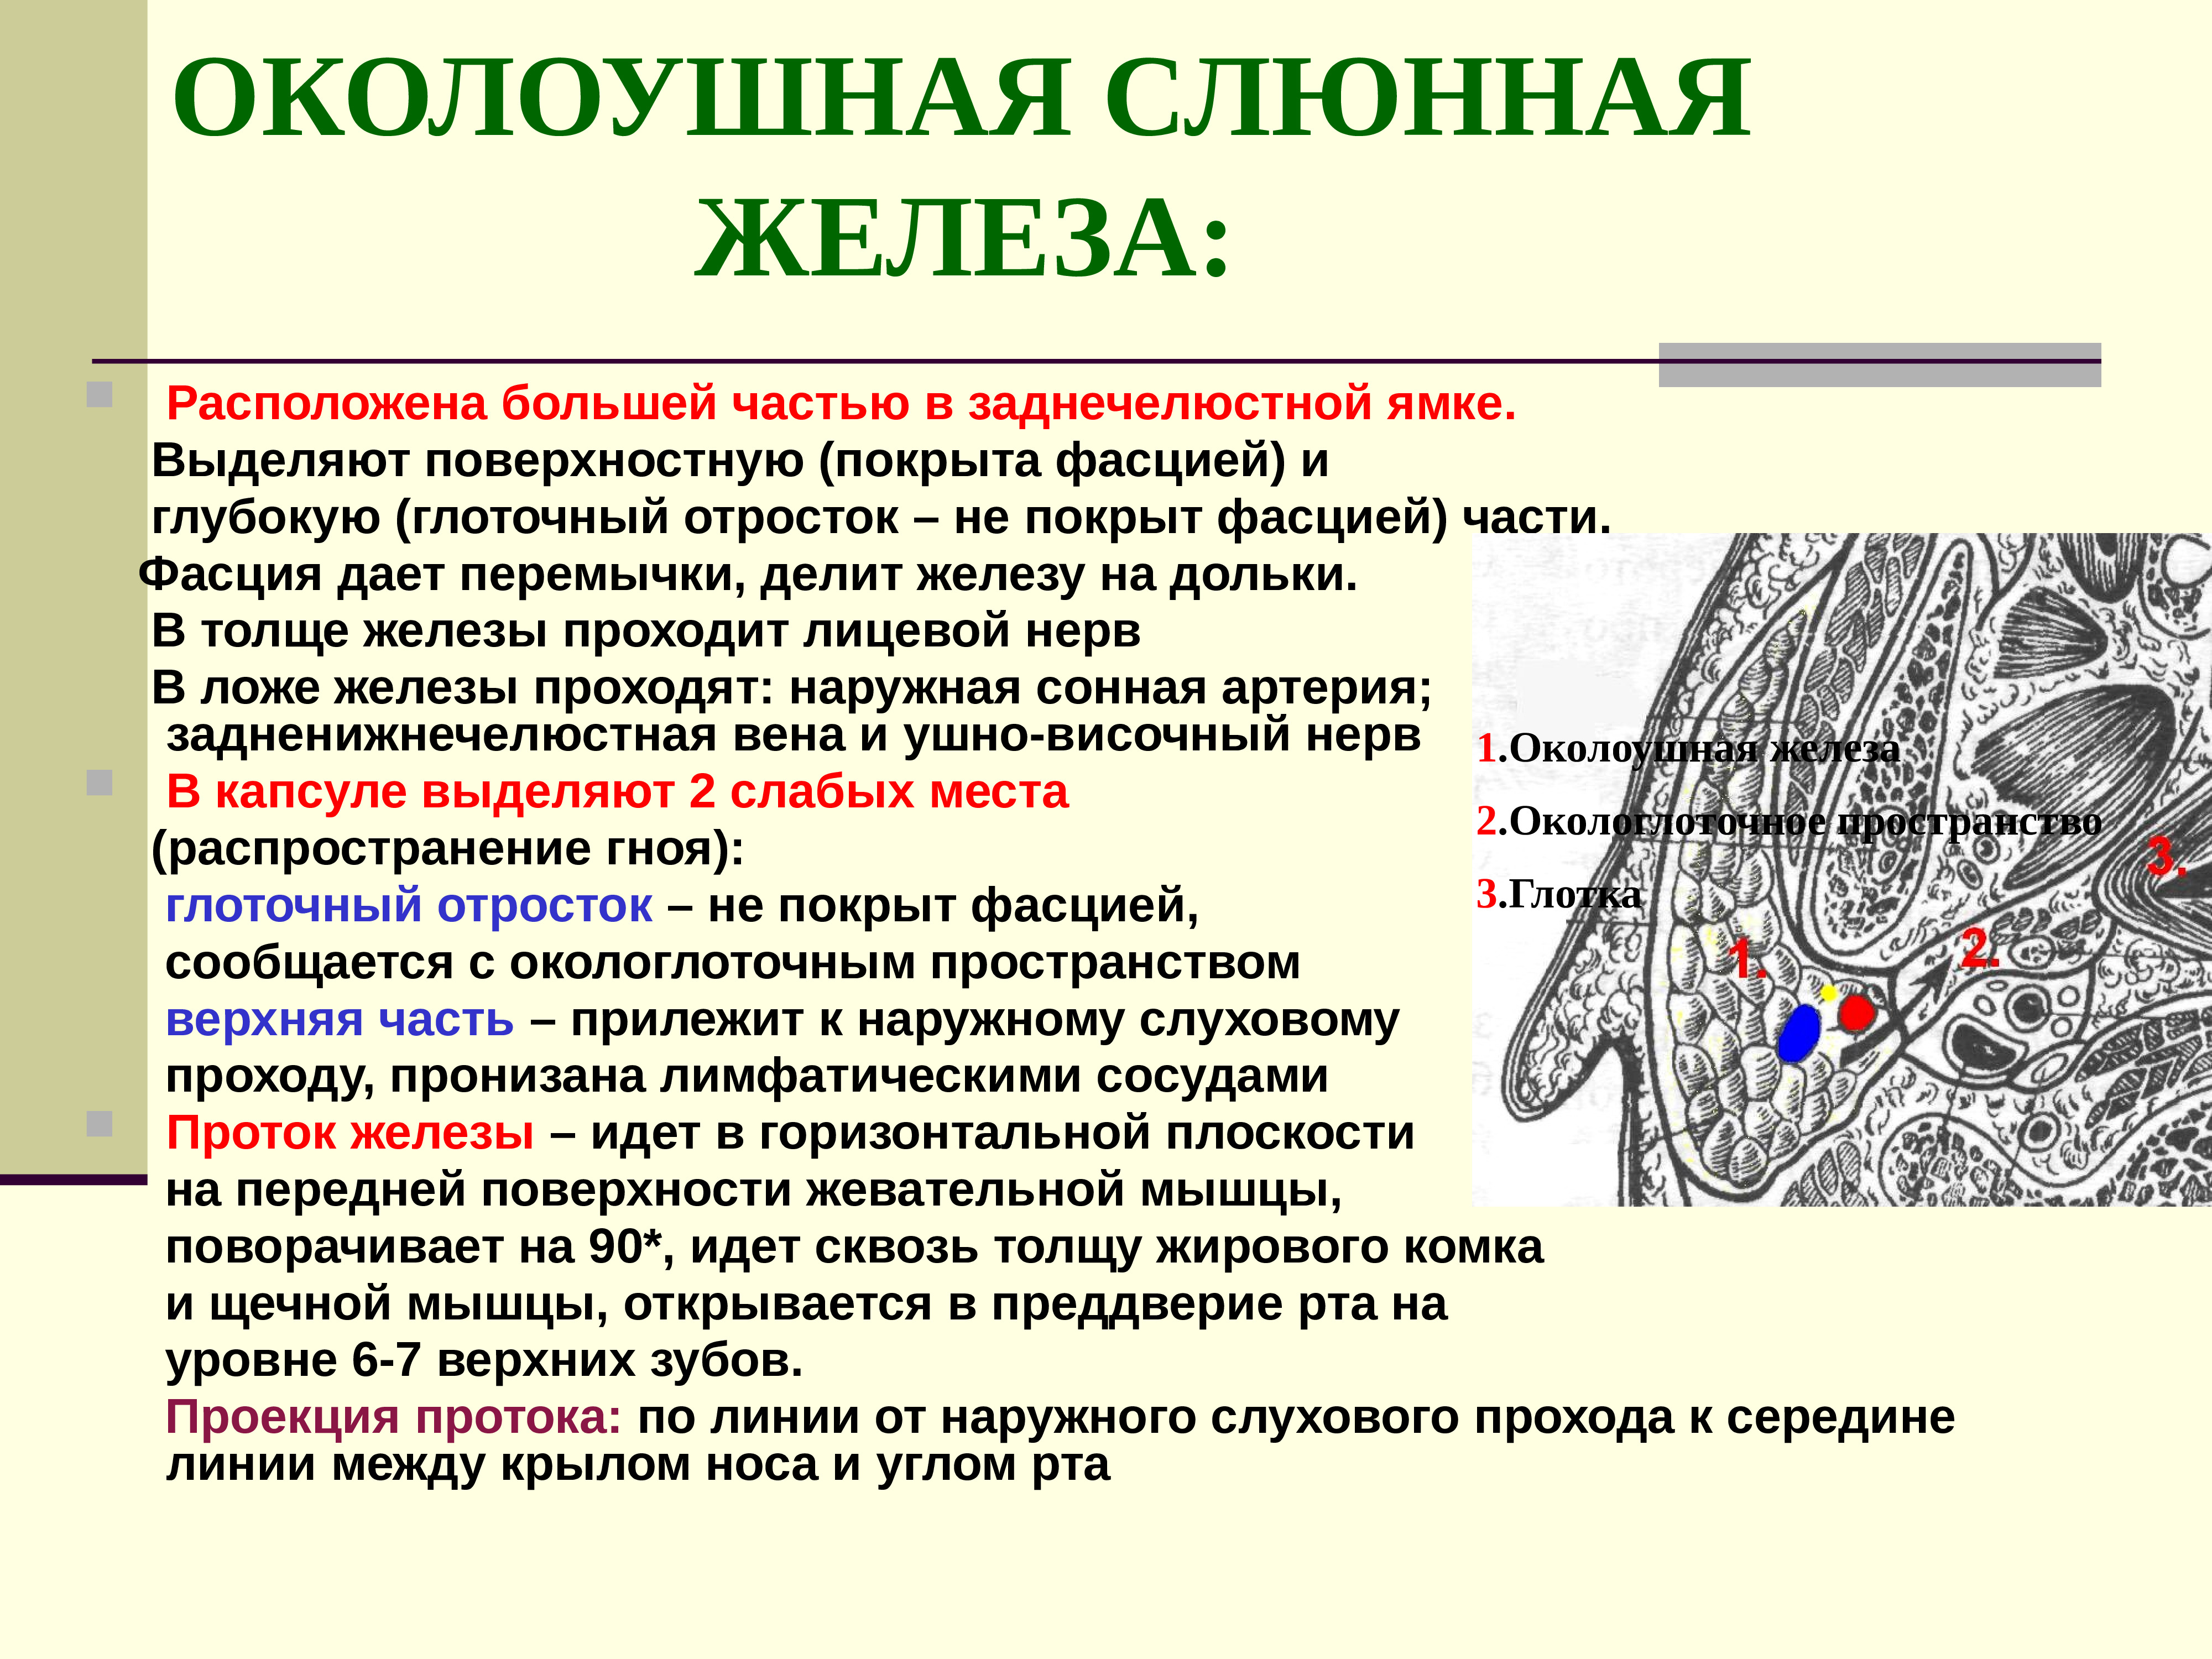 Околоушная железа является. Околоушная слюнная железа топографическая анатомия. Околоушная слюнная железа анатомия топография. Околоушная слюнная железа по строению является. Топография околоушной слюнной железы.